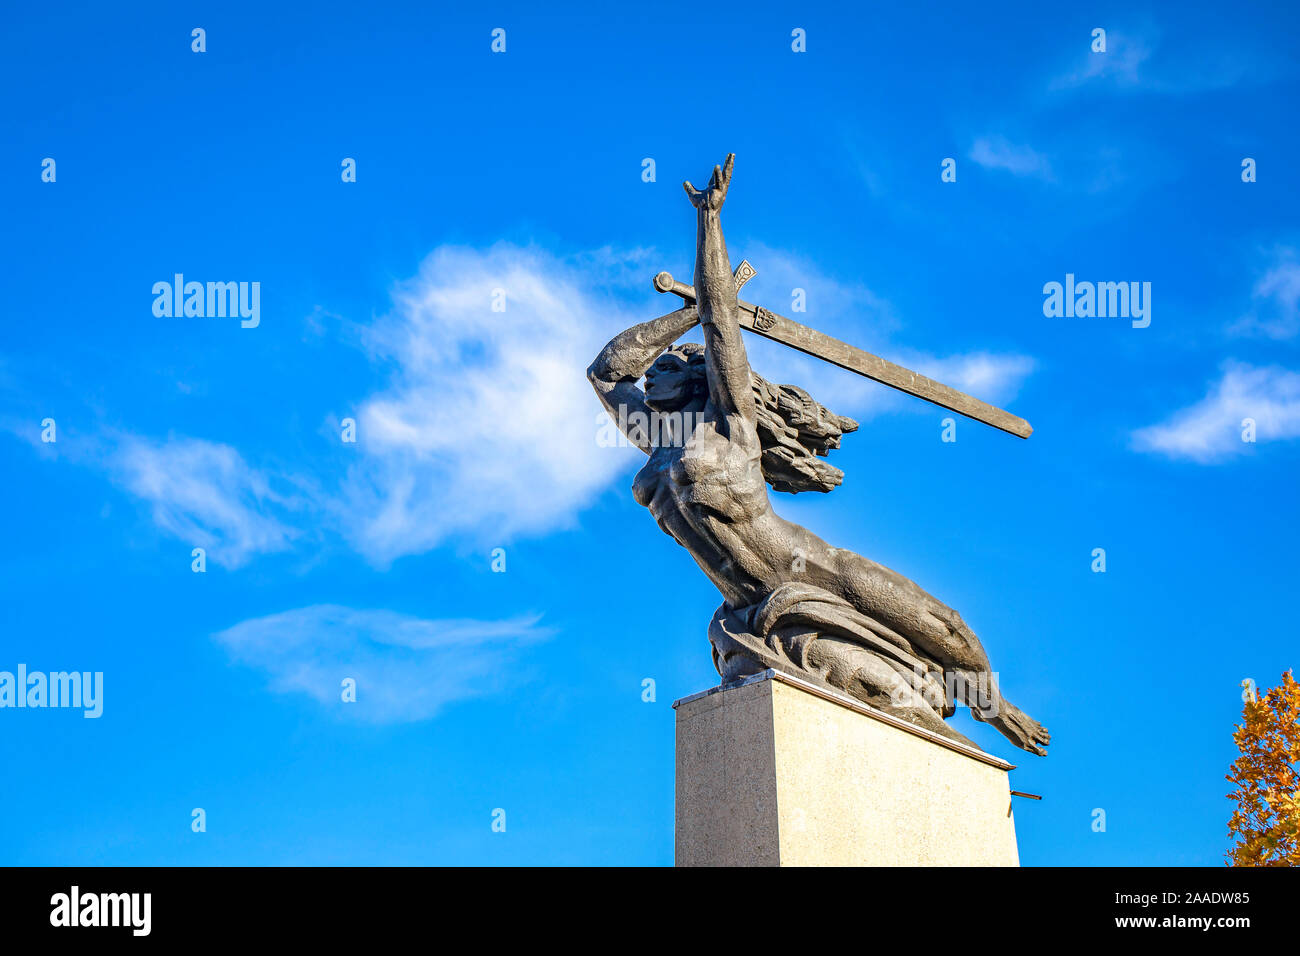 Warszawska Nike - The Monument to the Heroes of Warsaw - Nike, city landmarks, rebuild old town. / Poland Stock Photo - Alamy